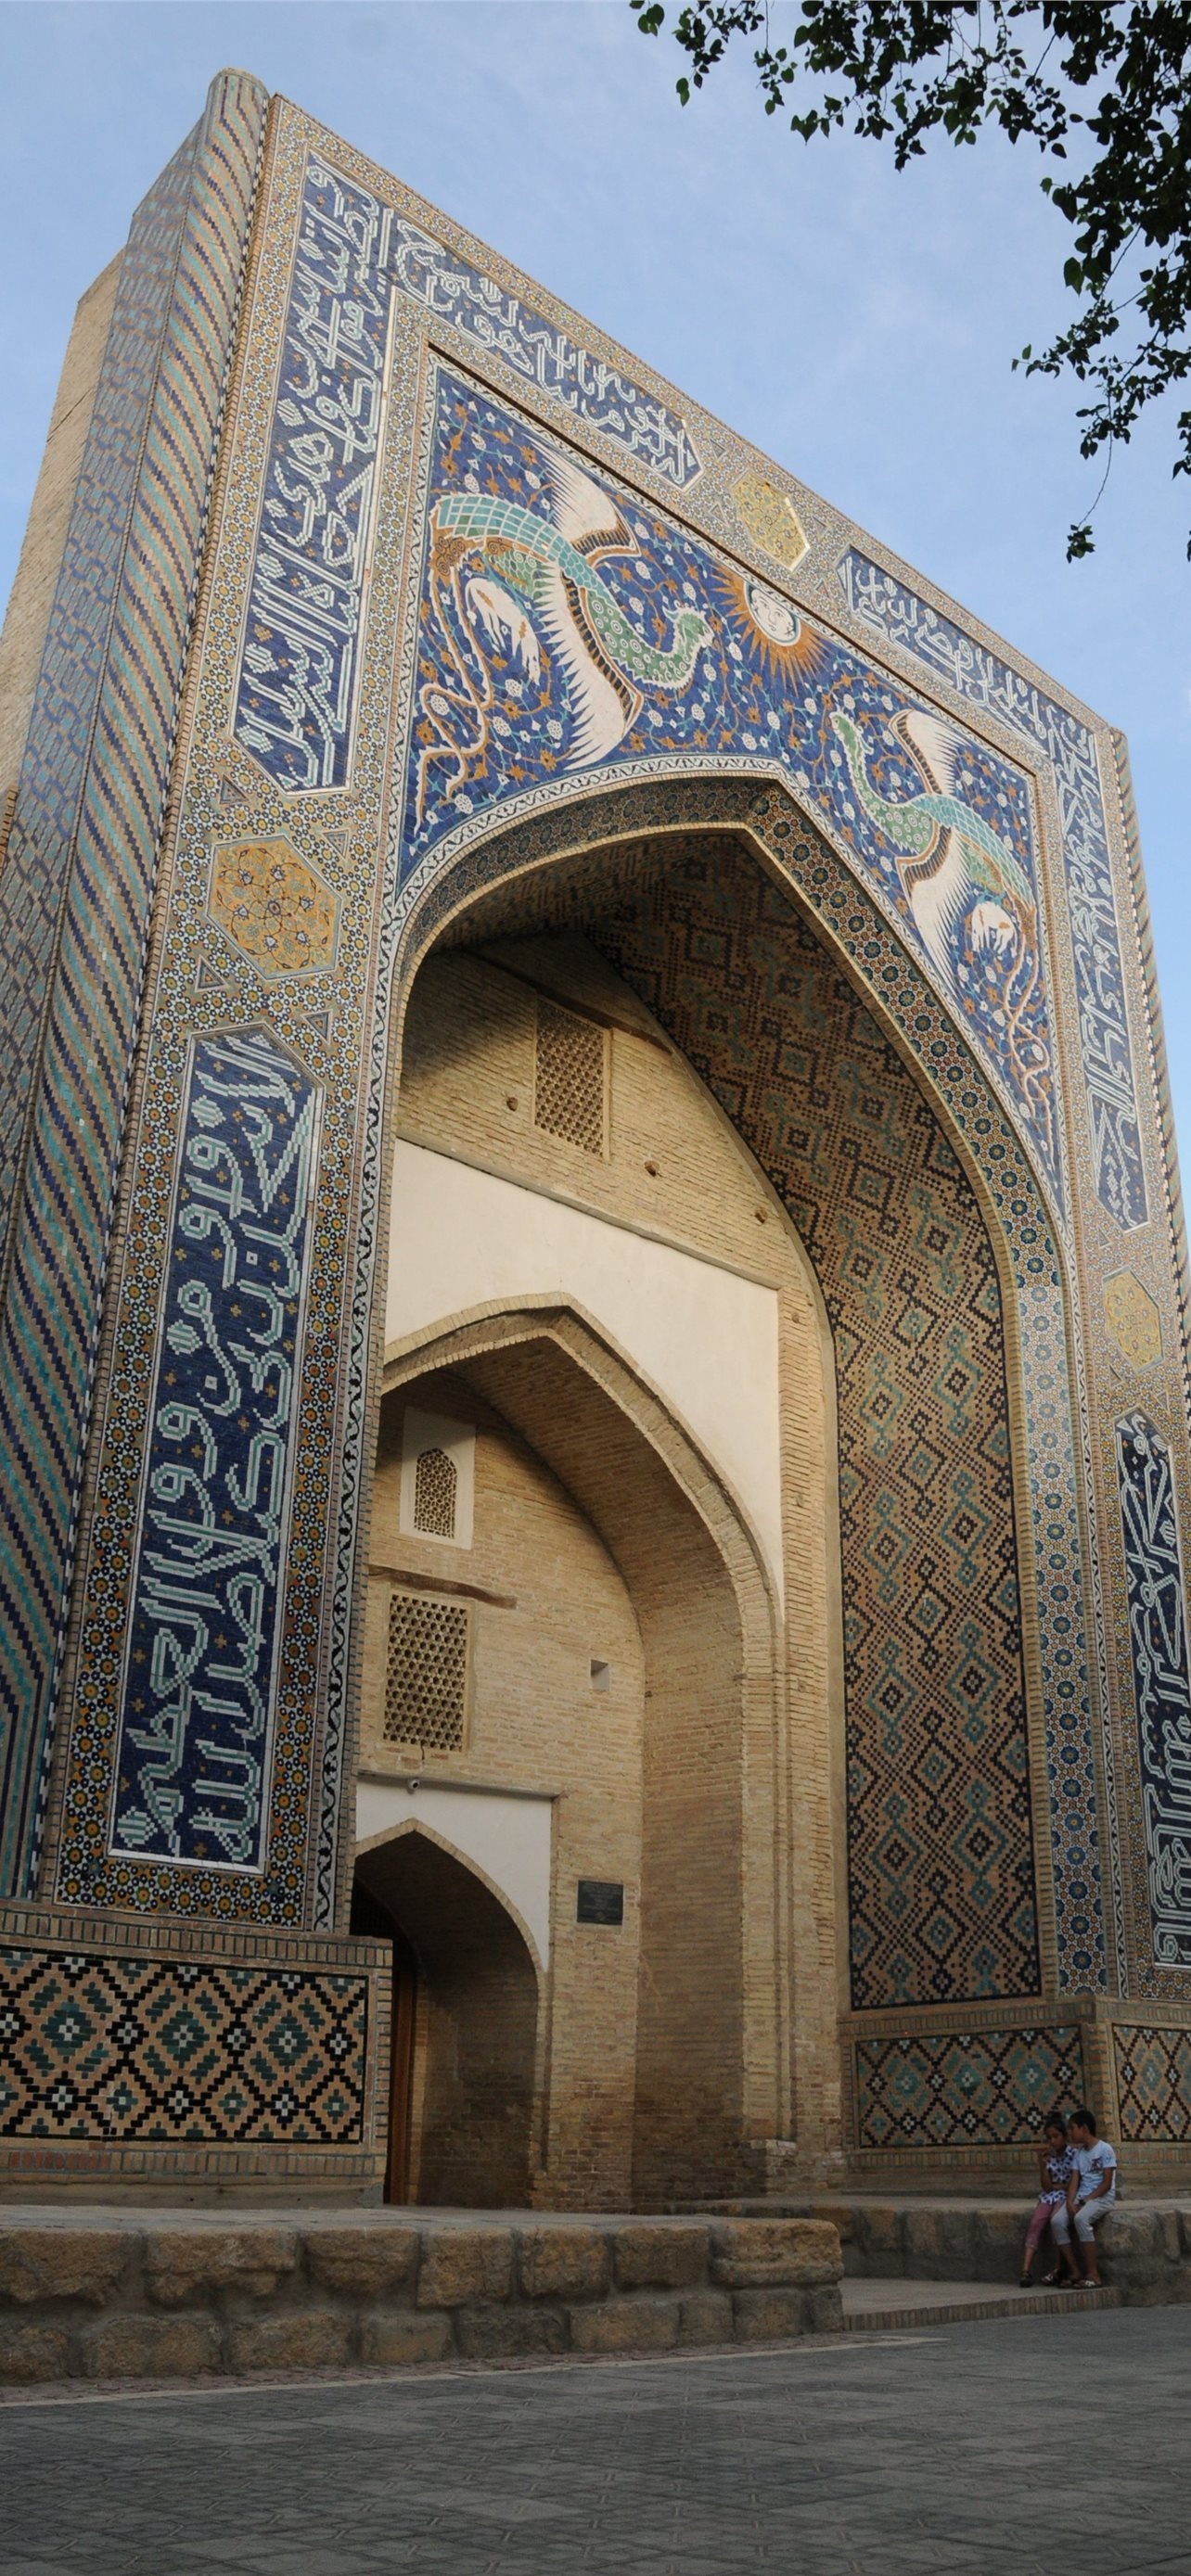 Best Uzbekistan iPhone wallpapers, Stunning visuals, Travel inspiration, Wallpaper collection, 1290x2780 HD Handy